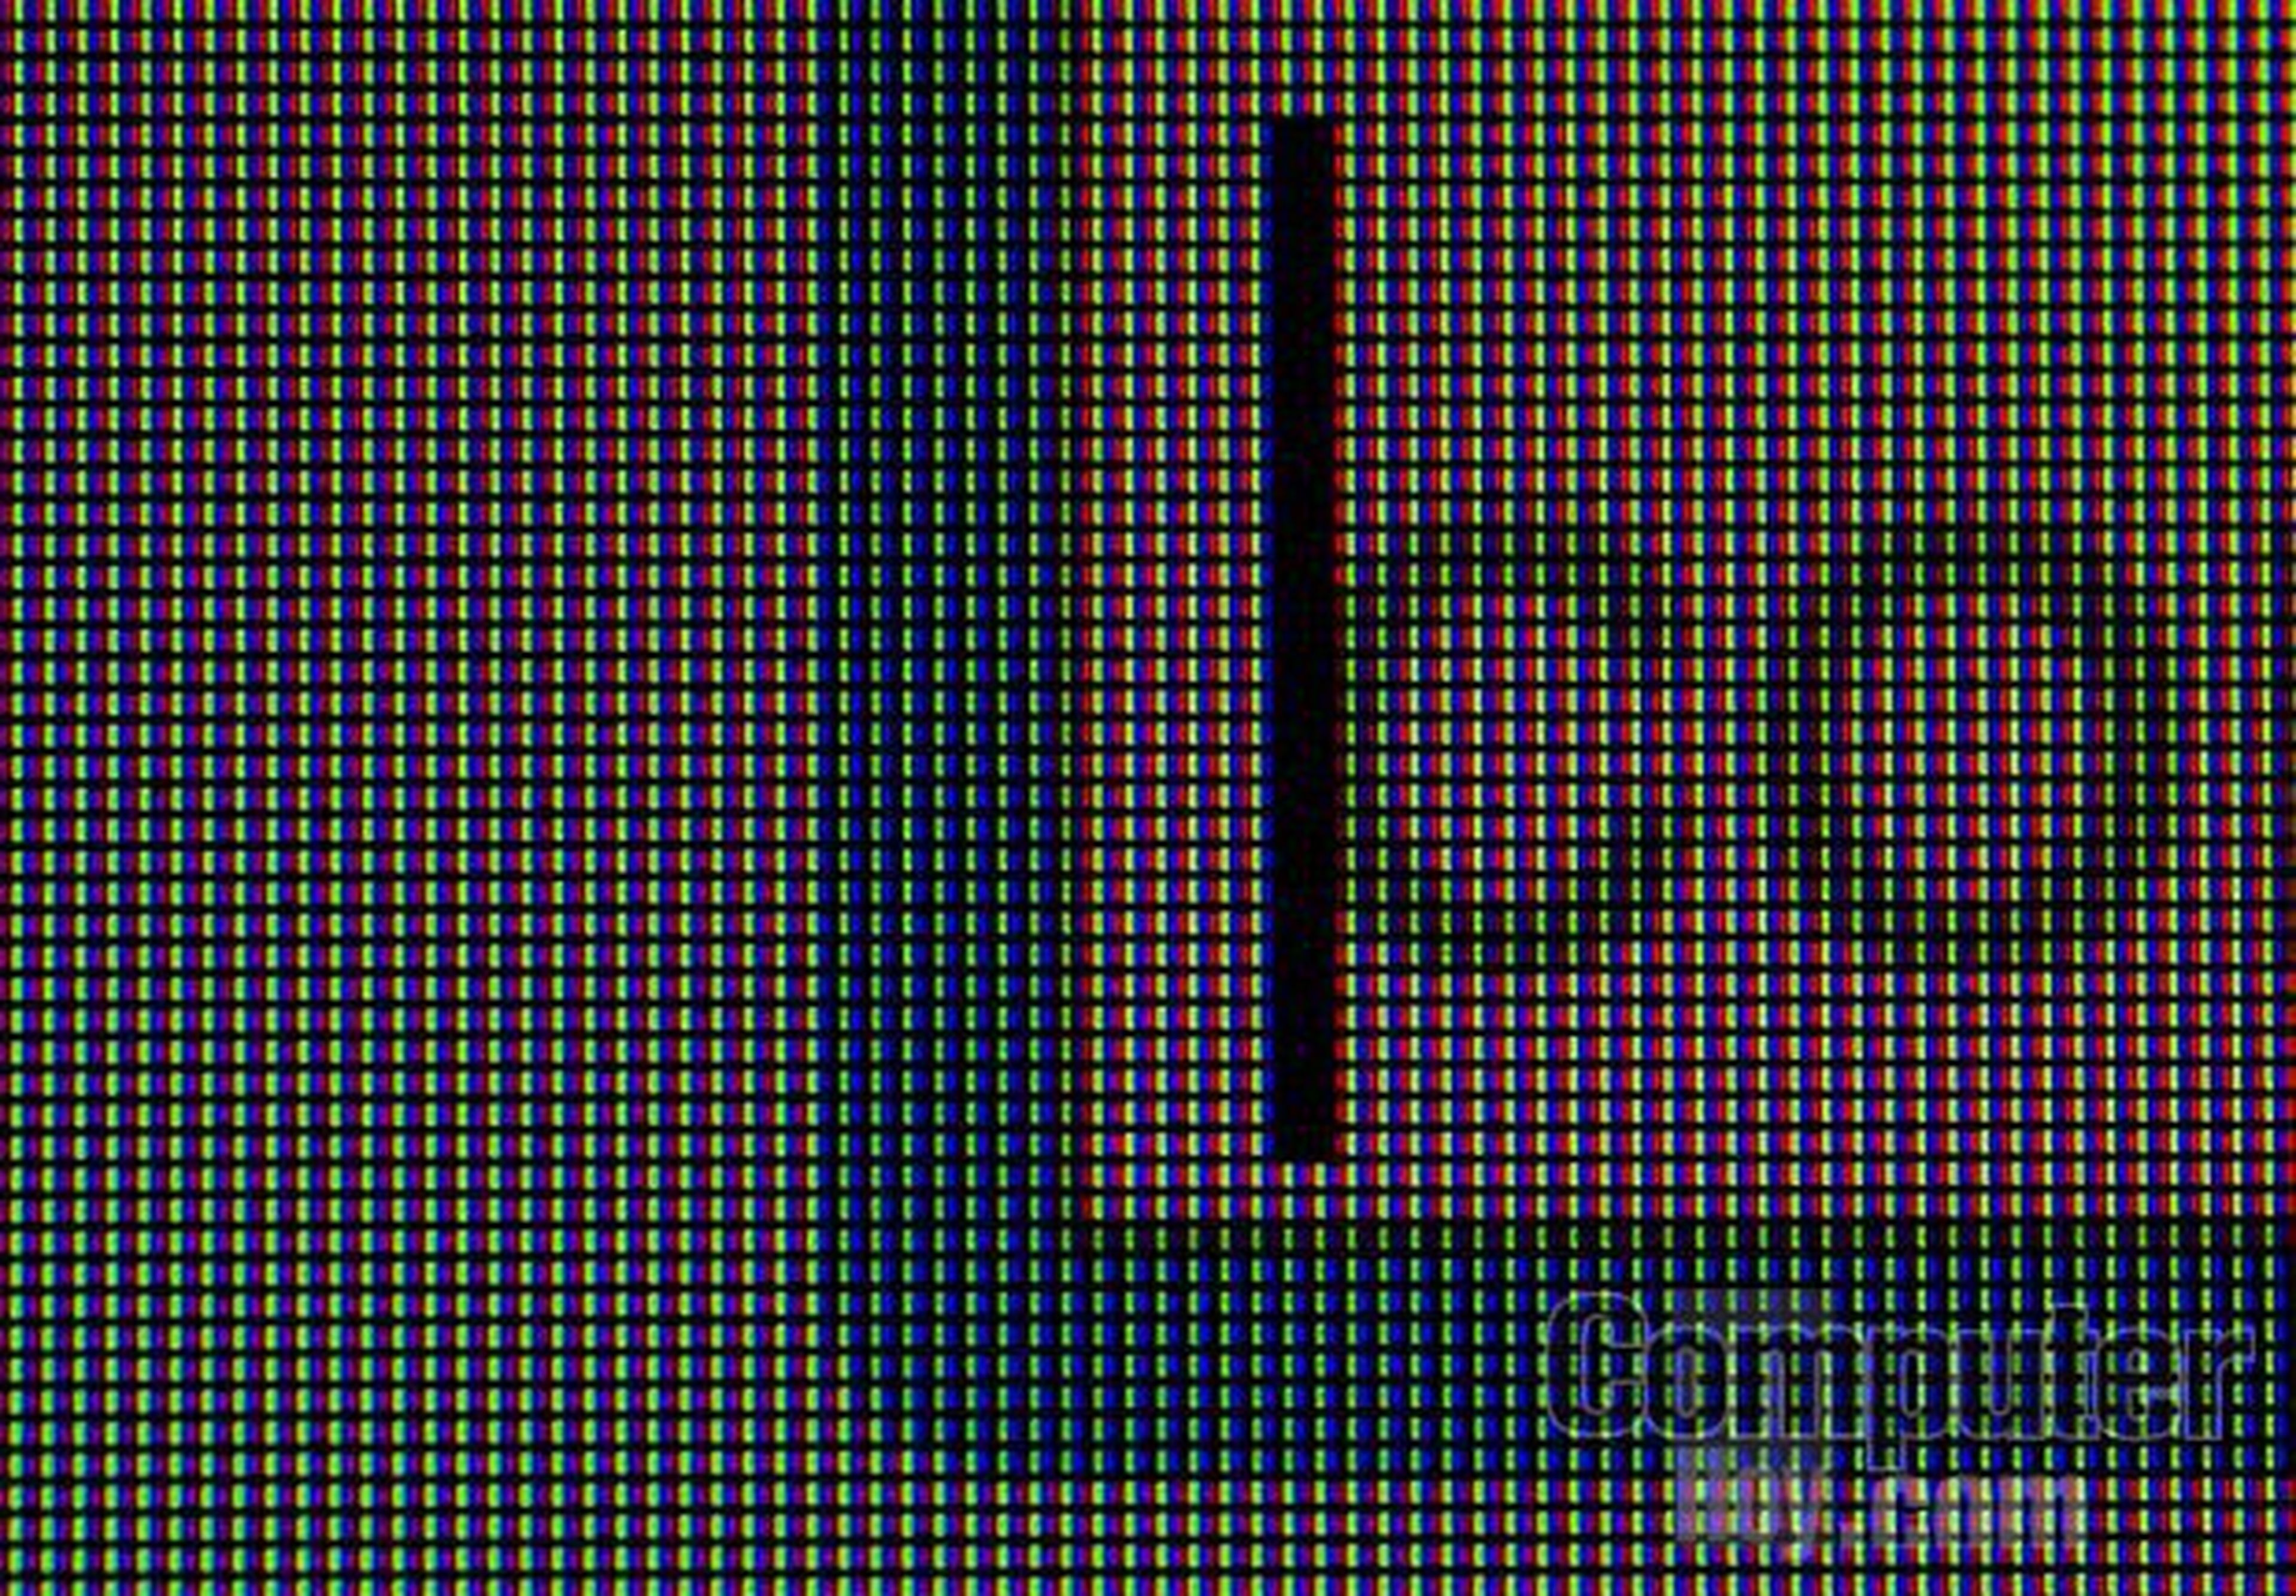 La matriz RGB de esta pantalla es extremadamente densa